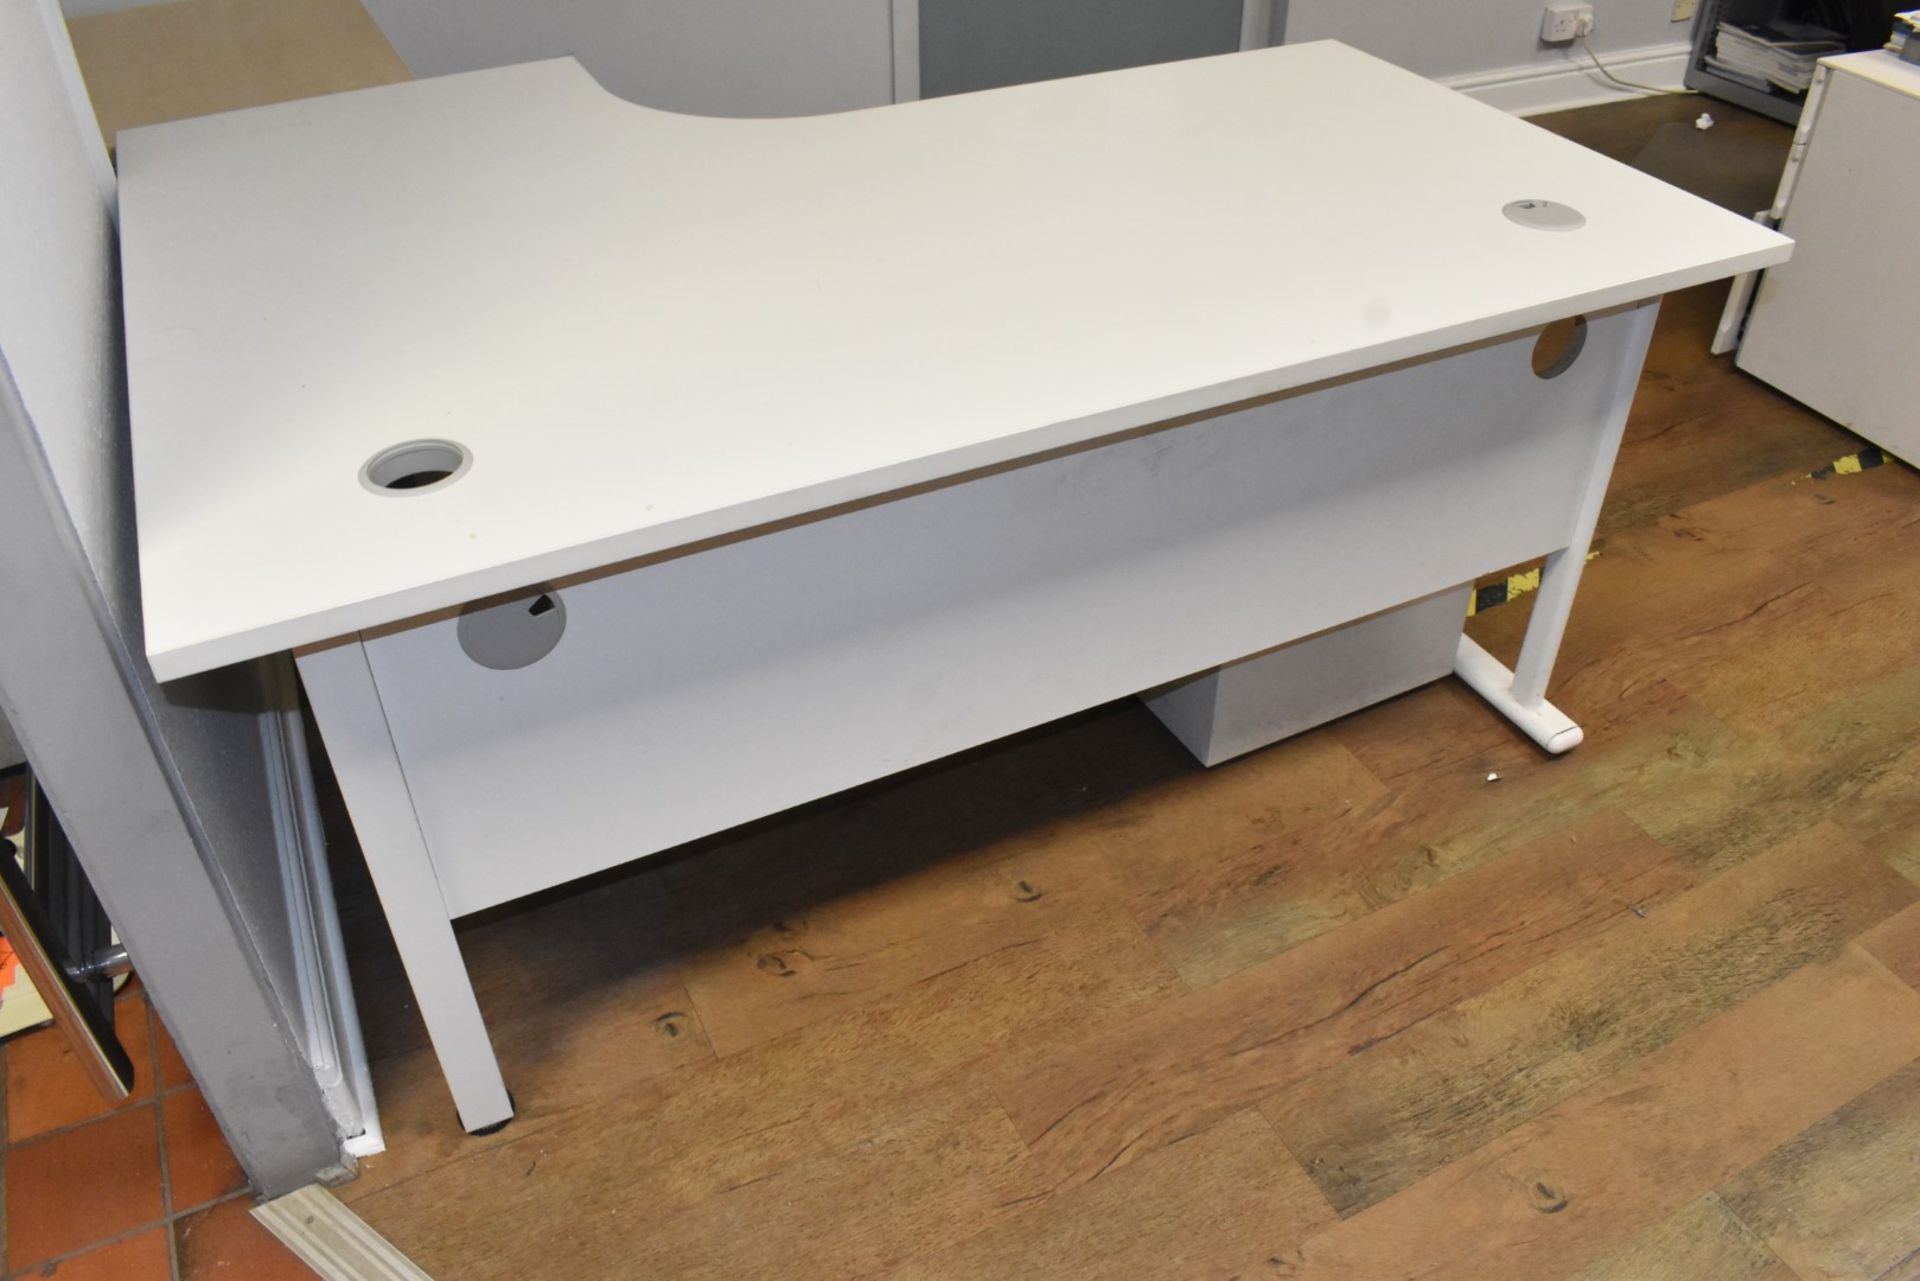 1 x Office Furniture Set Including a Corner Desk, Drawer Pedestal and Sliding Door Cabinet - Image 5 of 10